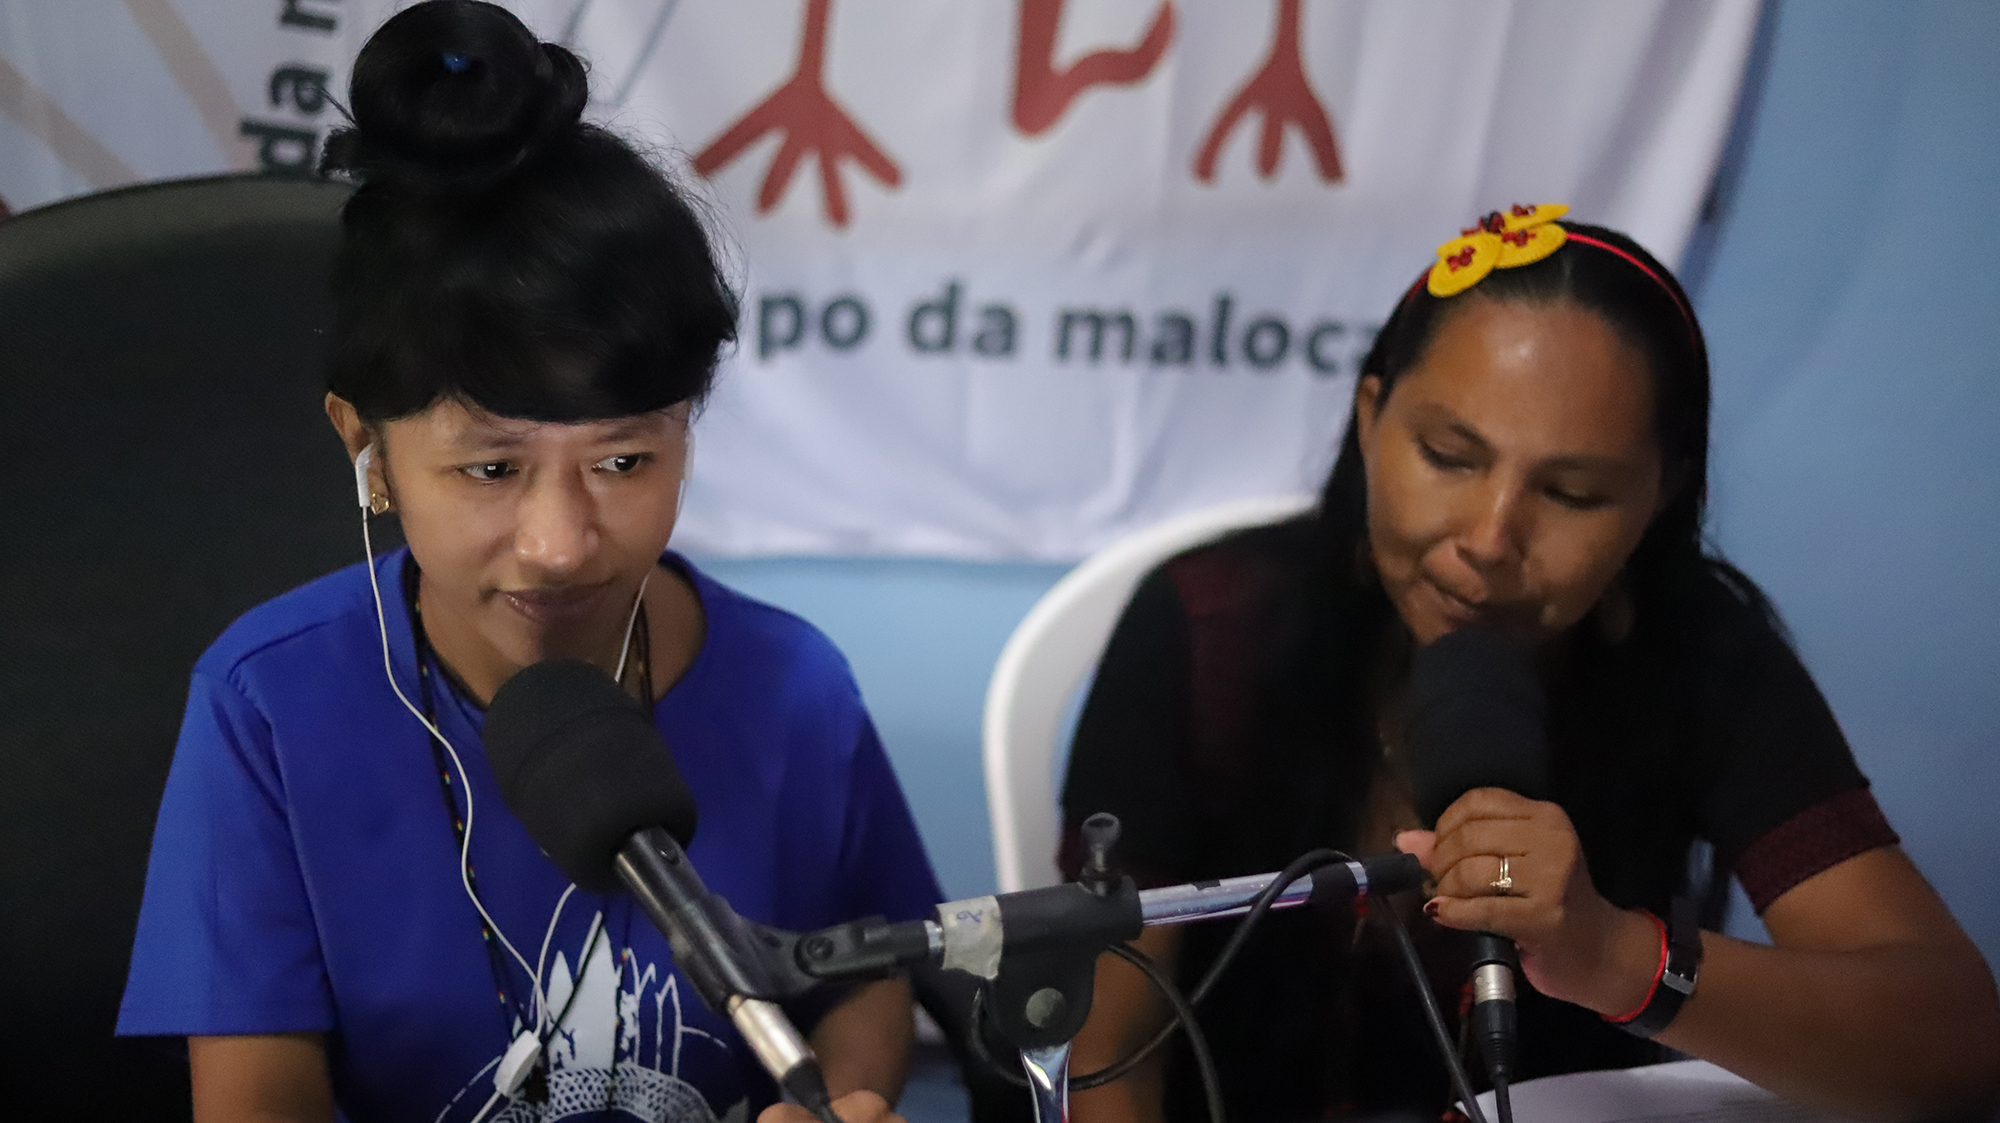 Cláudia Ferraz Wanano comanda junto com Elizângela Baré o programa Papo da Maloca, na FM O Dia de São Gabriel da Cachoeira